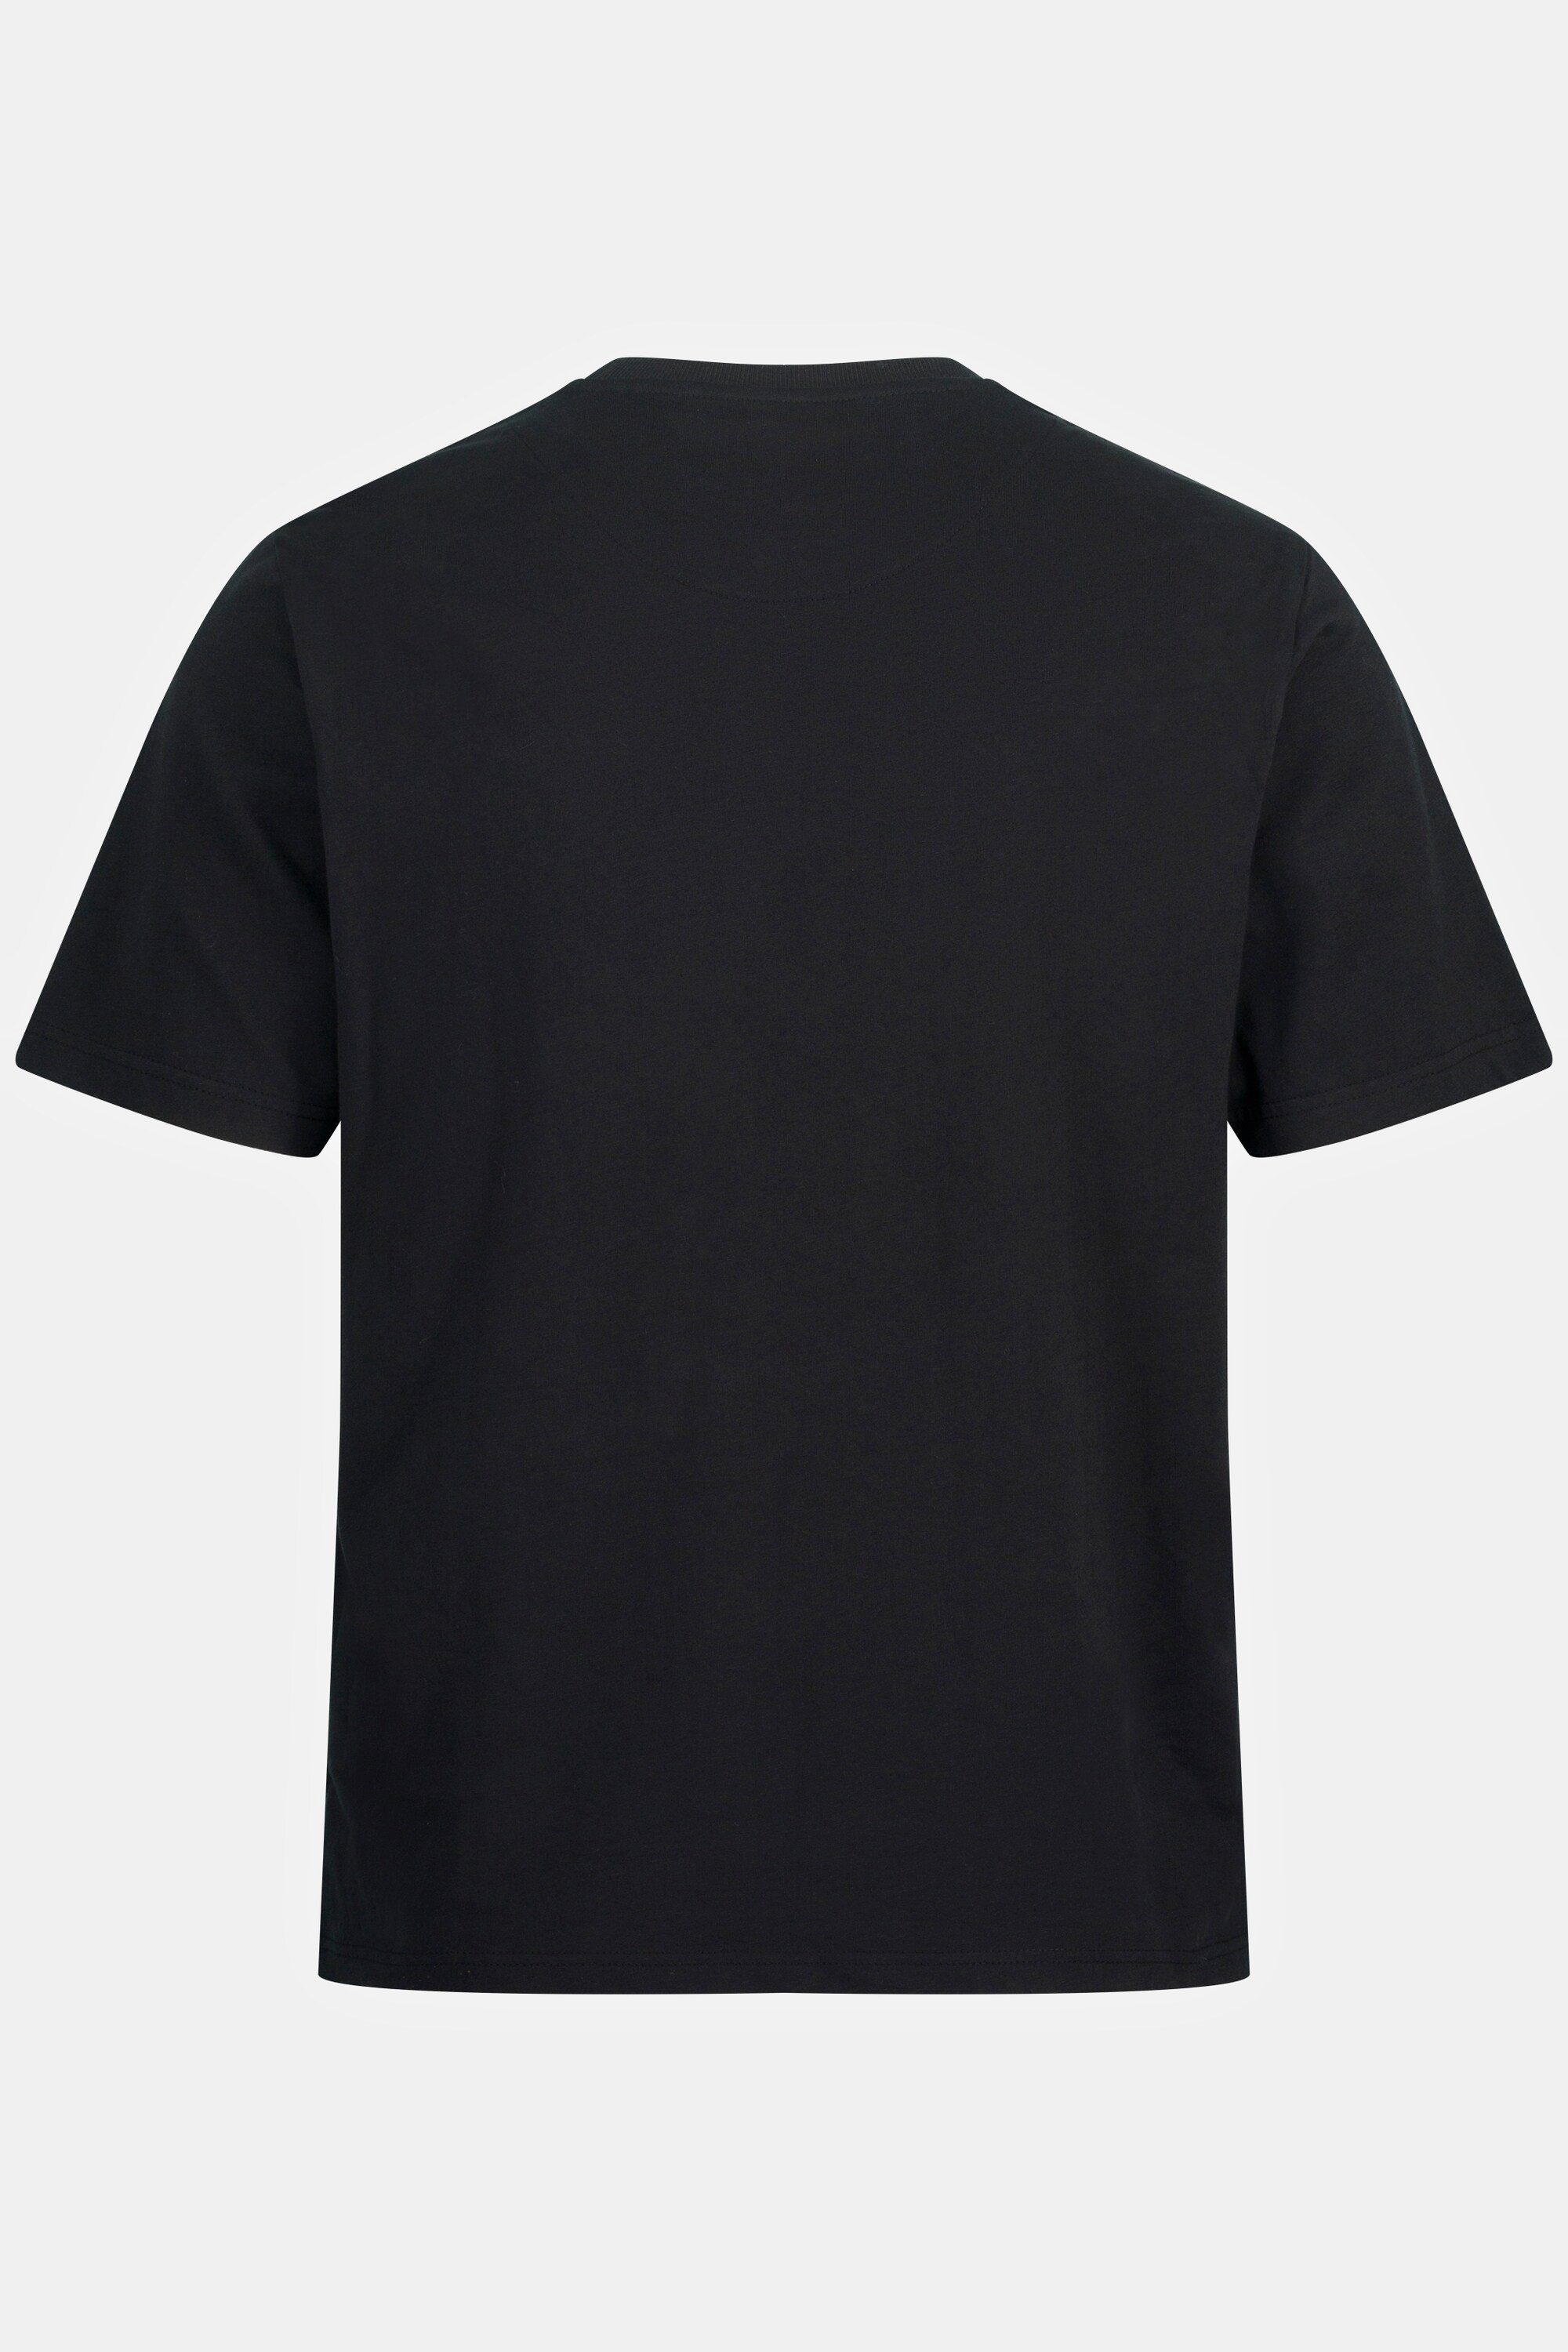 Print JP1880 Halbarm T-Shirt BBQ T-Shirt Rundhals